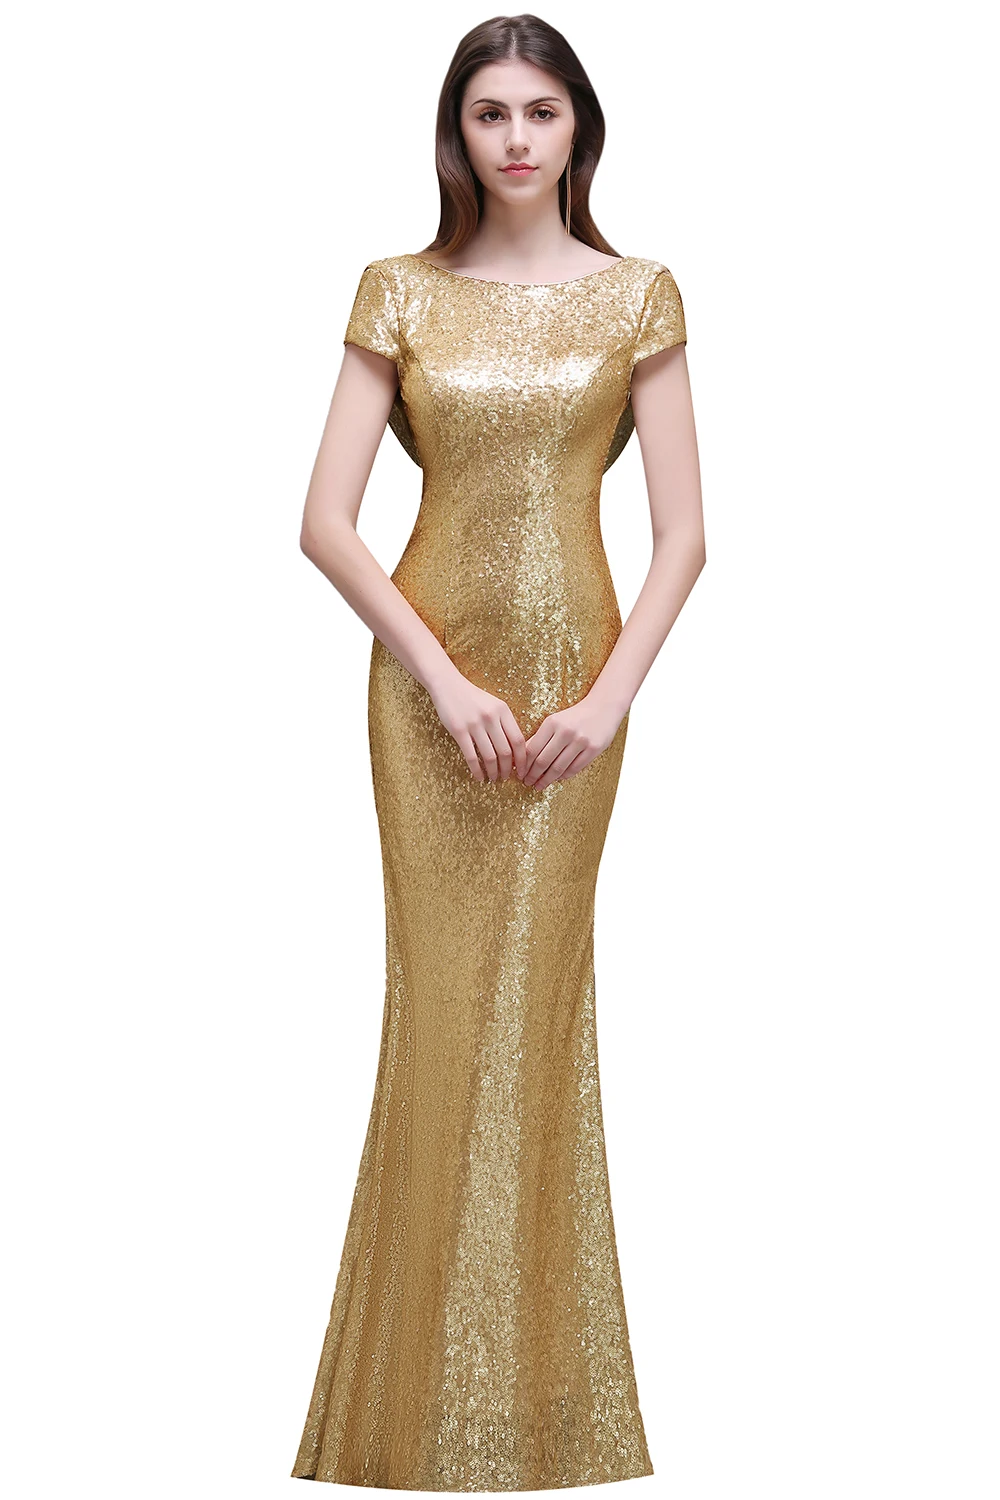 Модные блестящее платье розовое золото свадебные платья, расшитые блестками 2019 платье с русалочкой для Свадебная вечеринка Robe Demoiselle D'honneur